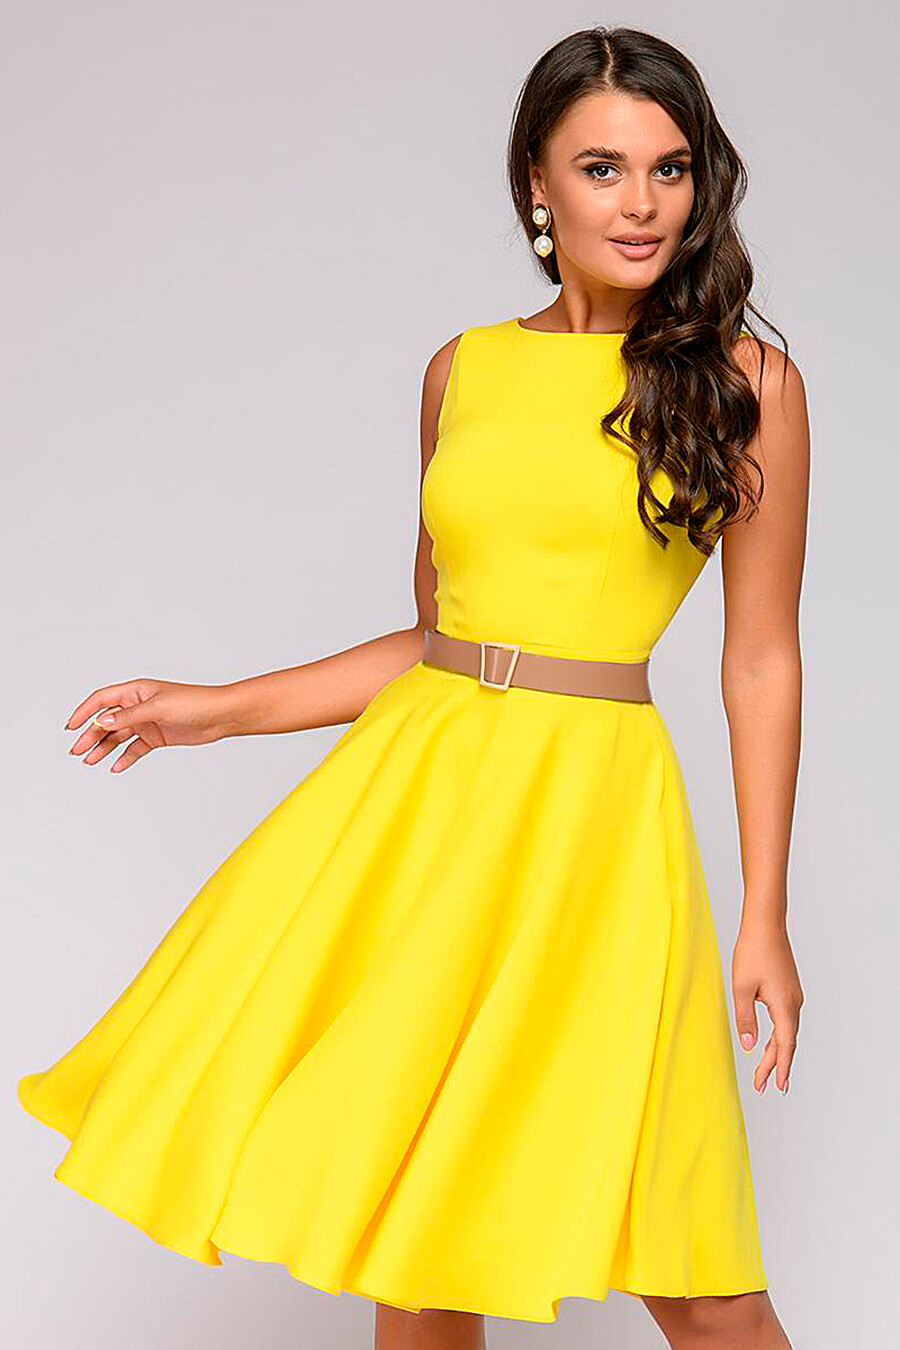 Платье без пояса. Желтое платье. Платье женское желтое. Жёлтое платье для женщины. Желтое пышное платье.